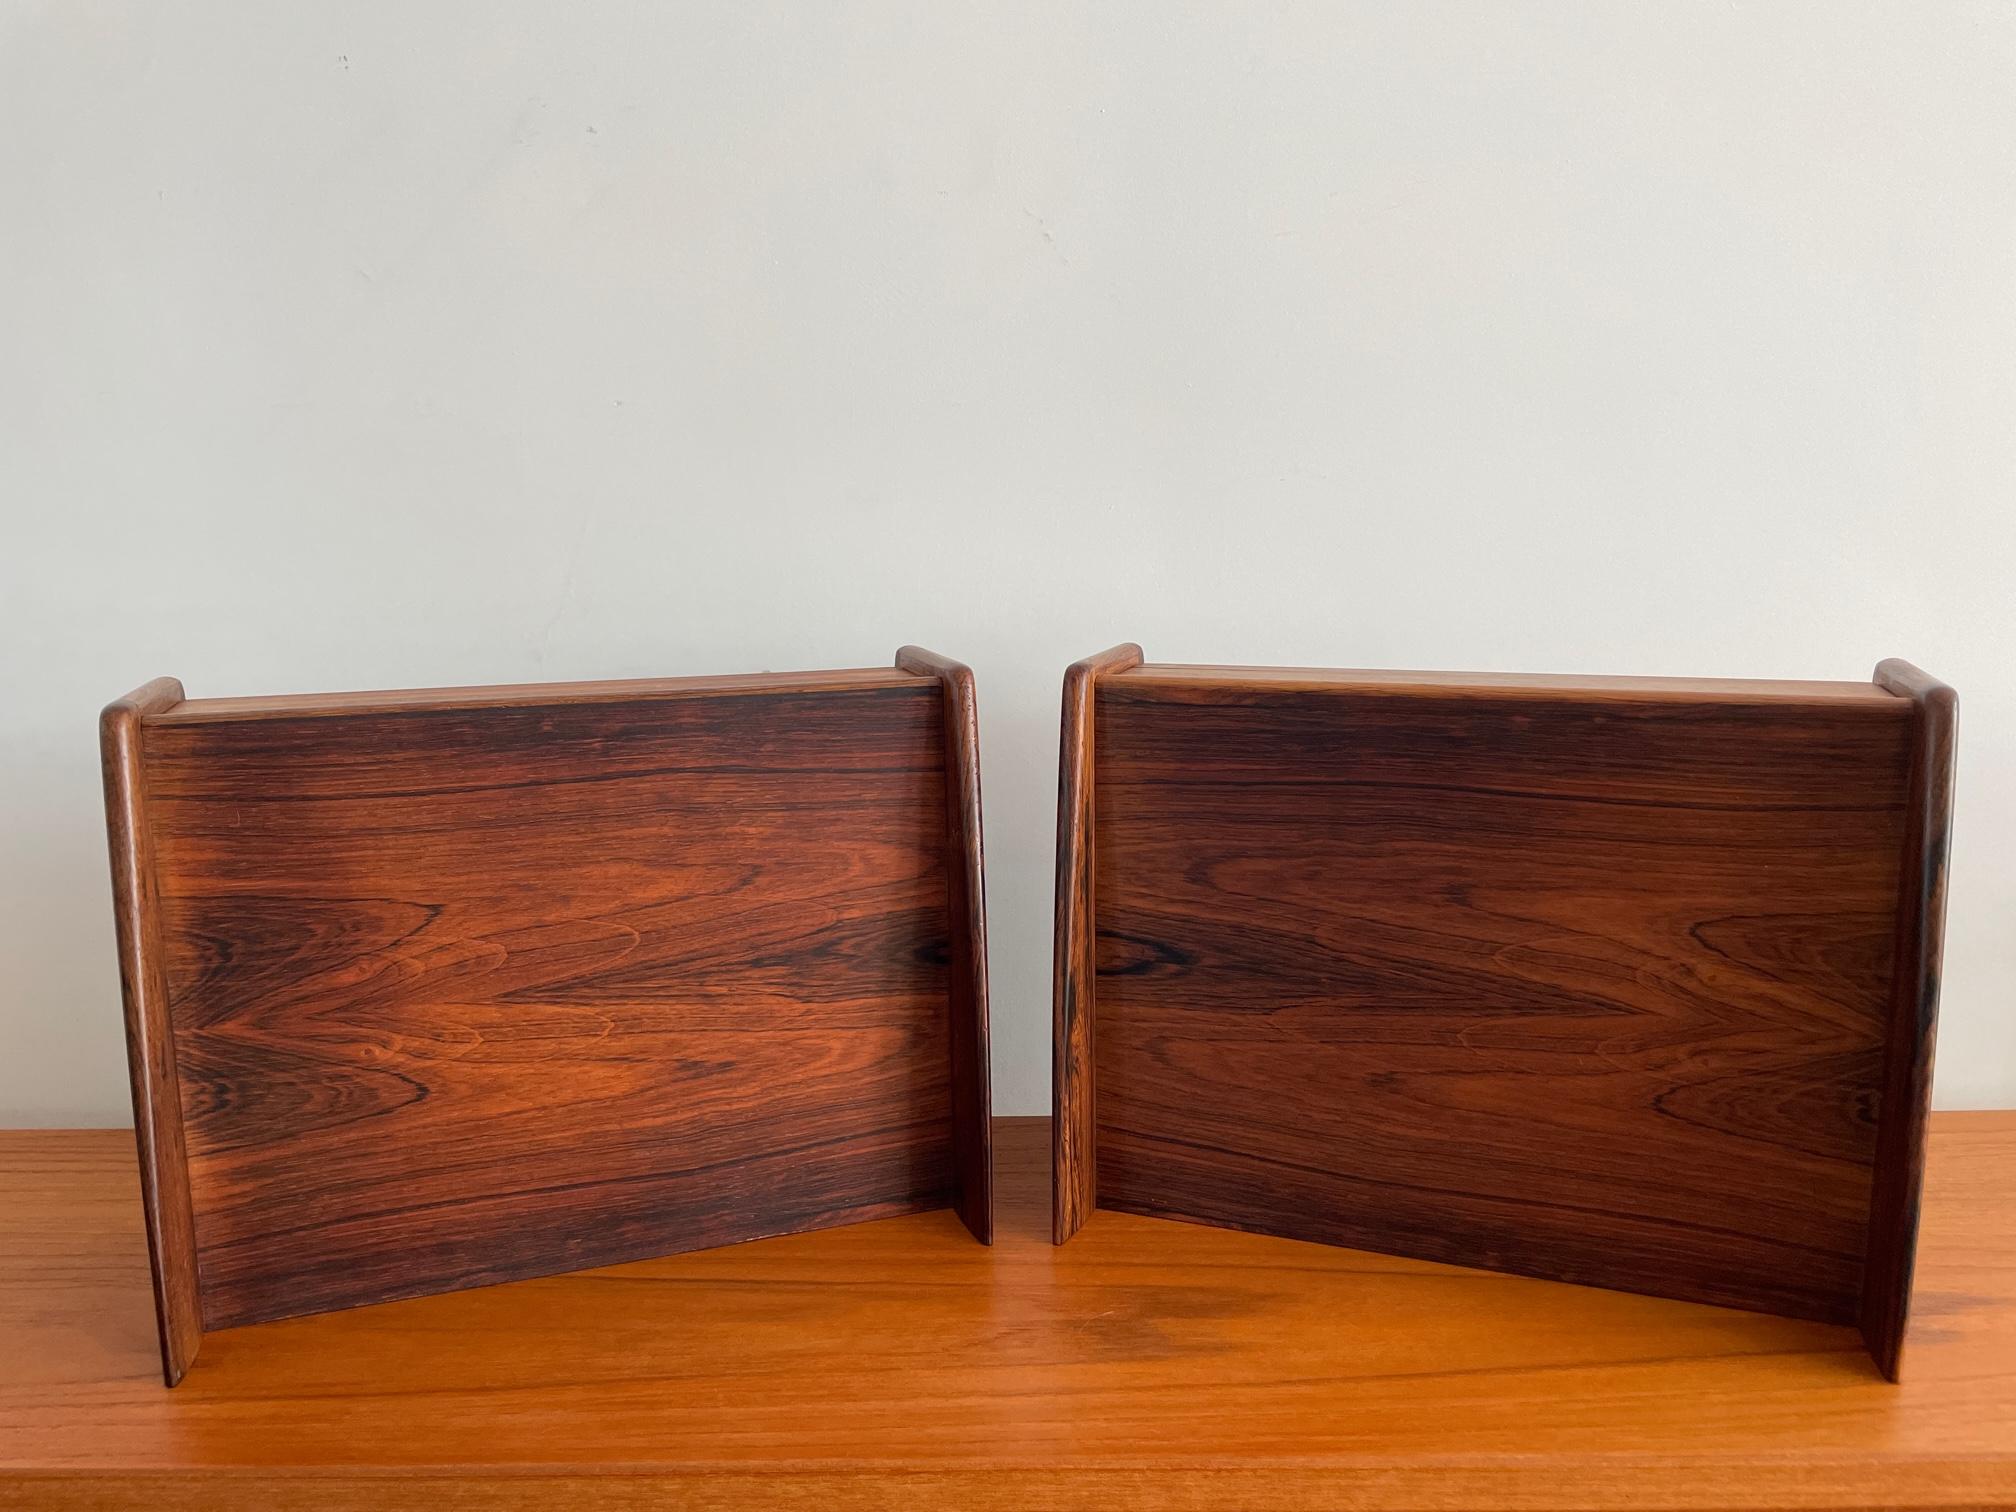 Quels meubles étonnants ! Paire de tables de nuit flottantes danoises du milieu du siècle par Melvin Mikkelsen années 1950. Chacun avec un tiroir. Le bois et l'artisanat sont tout simplement magnifiques. De l'art à l'état pur ! Magnifique grain de